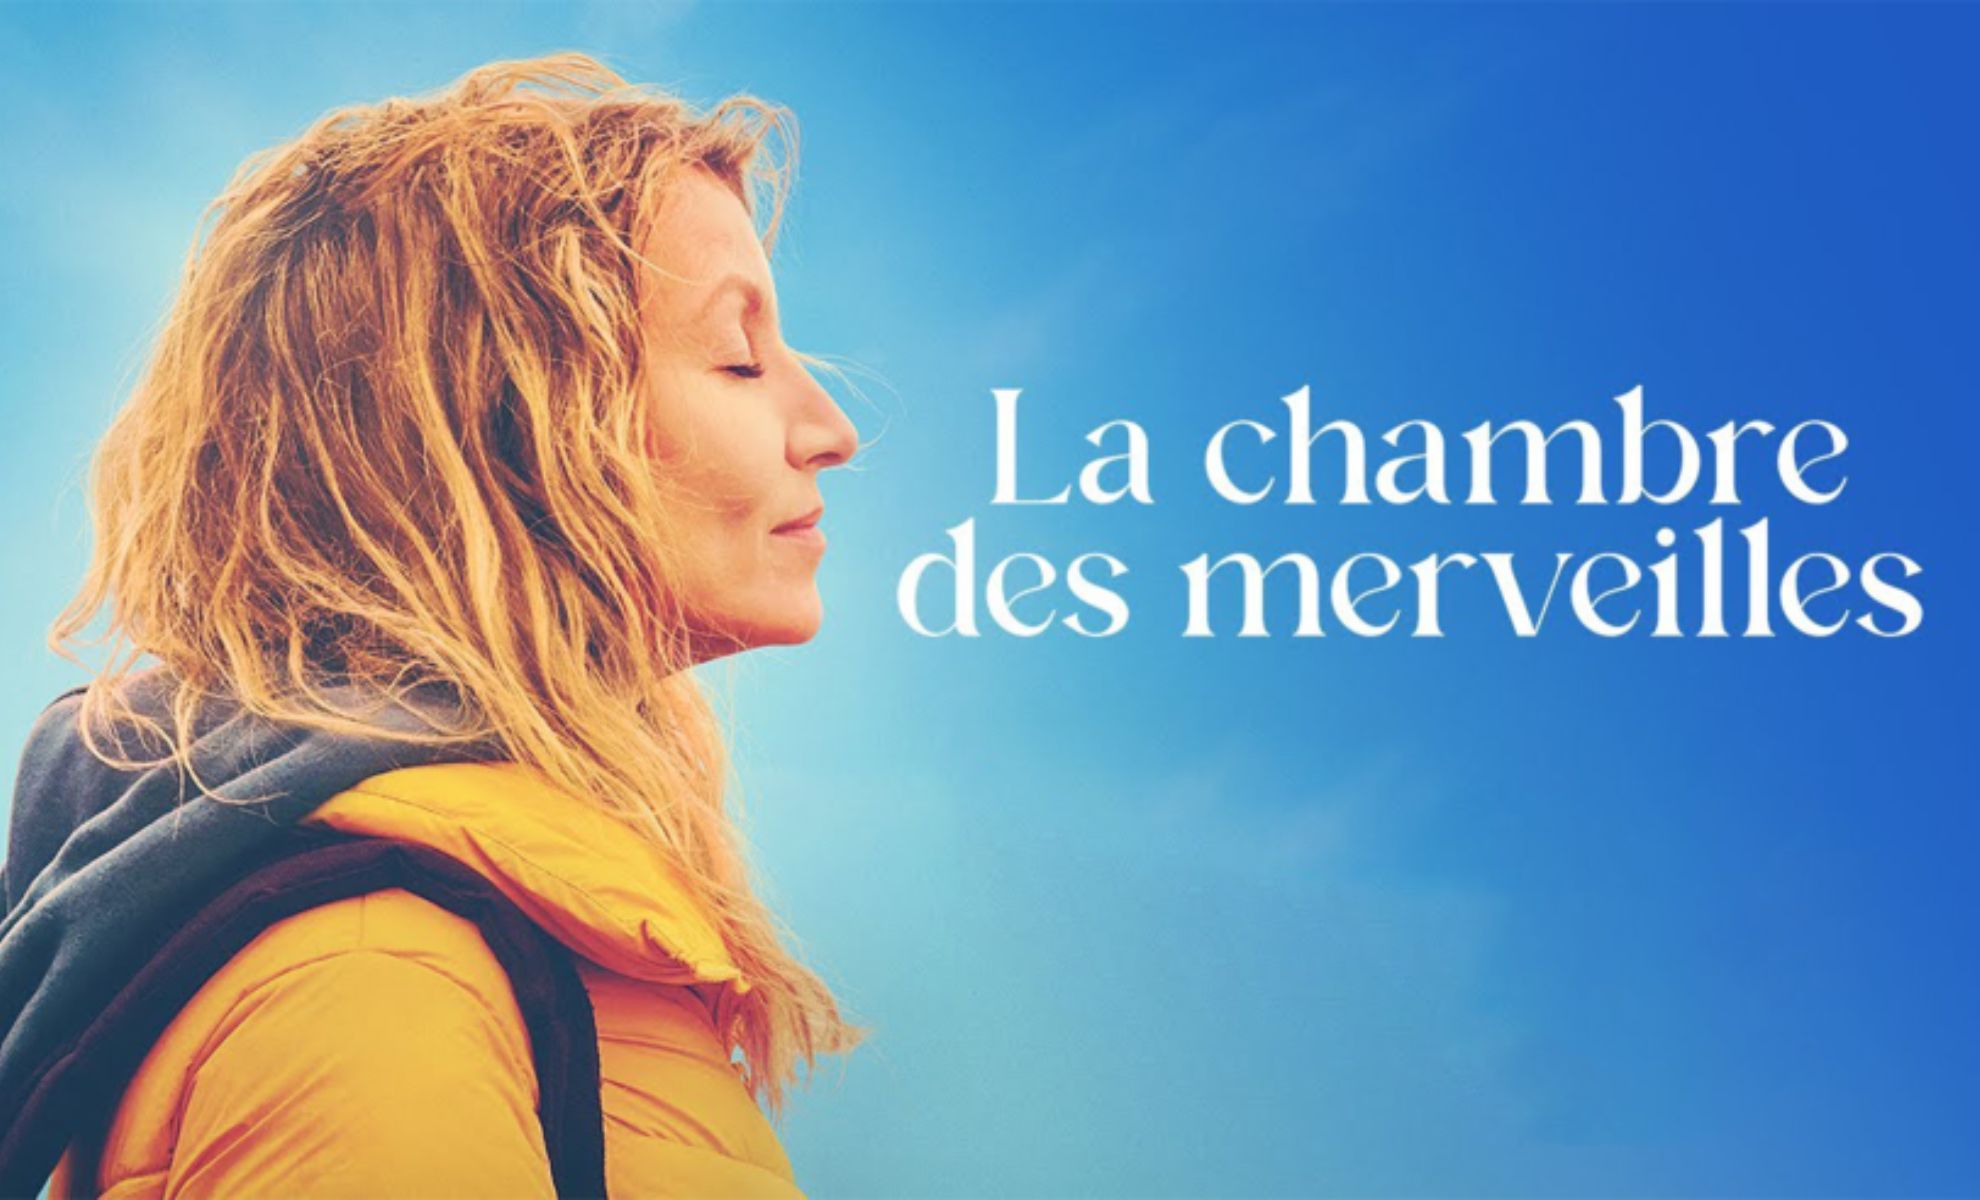 La Chambre des merveilles le nouveau film d'Alexandra Lamy bientôt au cinéma !